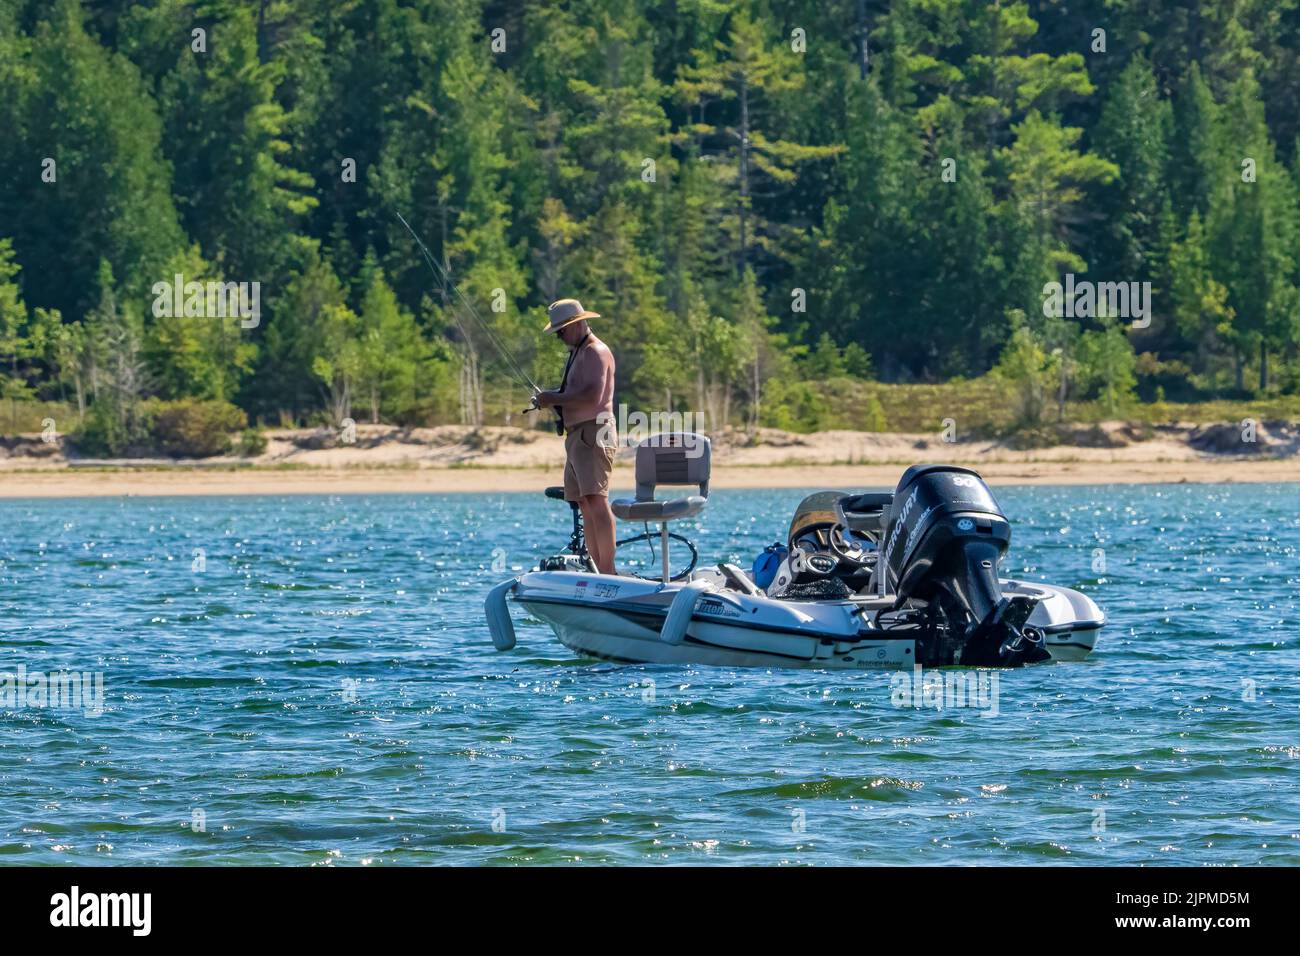 Una delle attrazioni dell'isola di Washington nella contea di Door Wisconsin è la pesca sportiva. Qui un pescatore solista tenta la sua fortuna a Jackson Harbor. Foto Stock